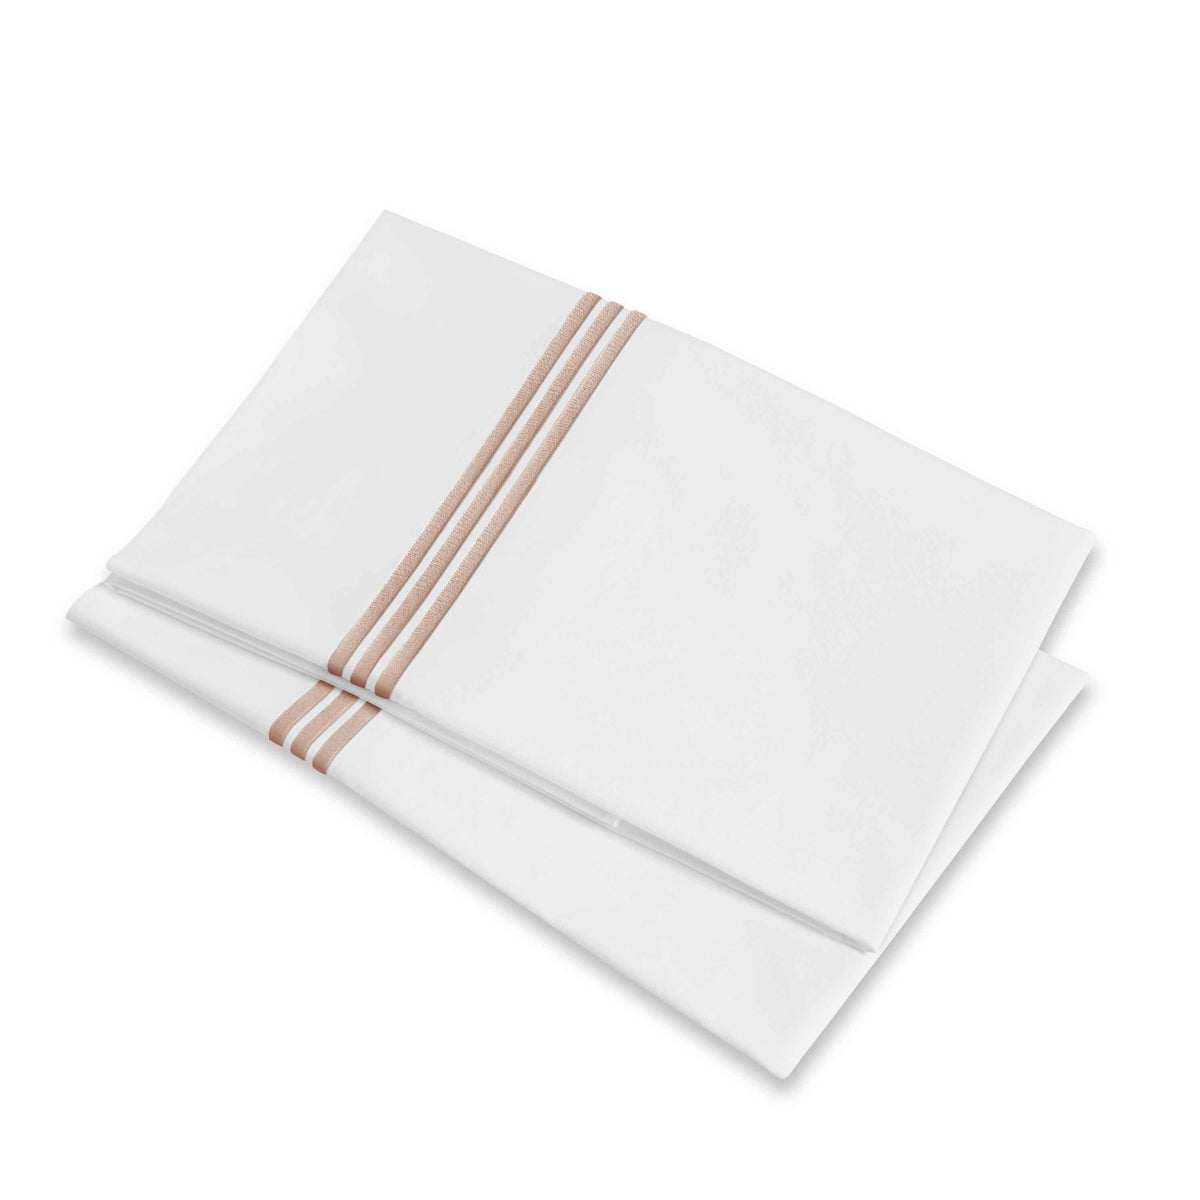 Folded Pillowcases of Signoria Platinum Percale Bedding in White/Antique Rose Color